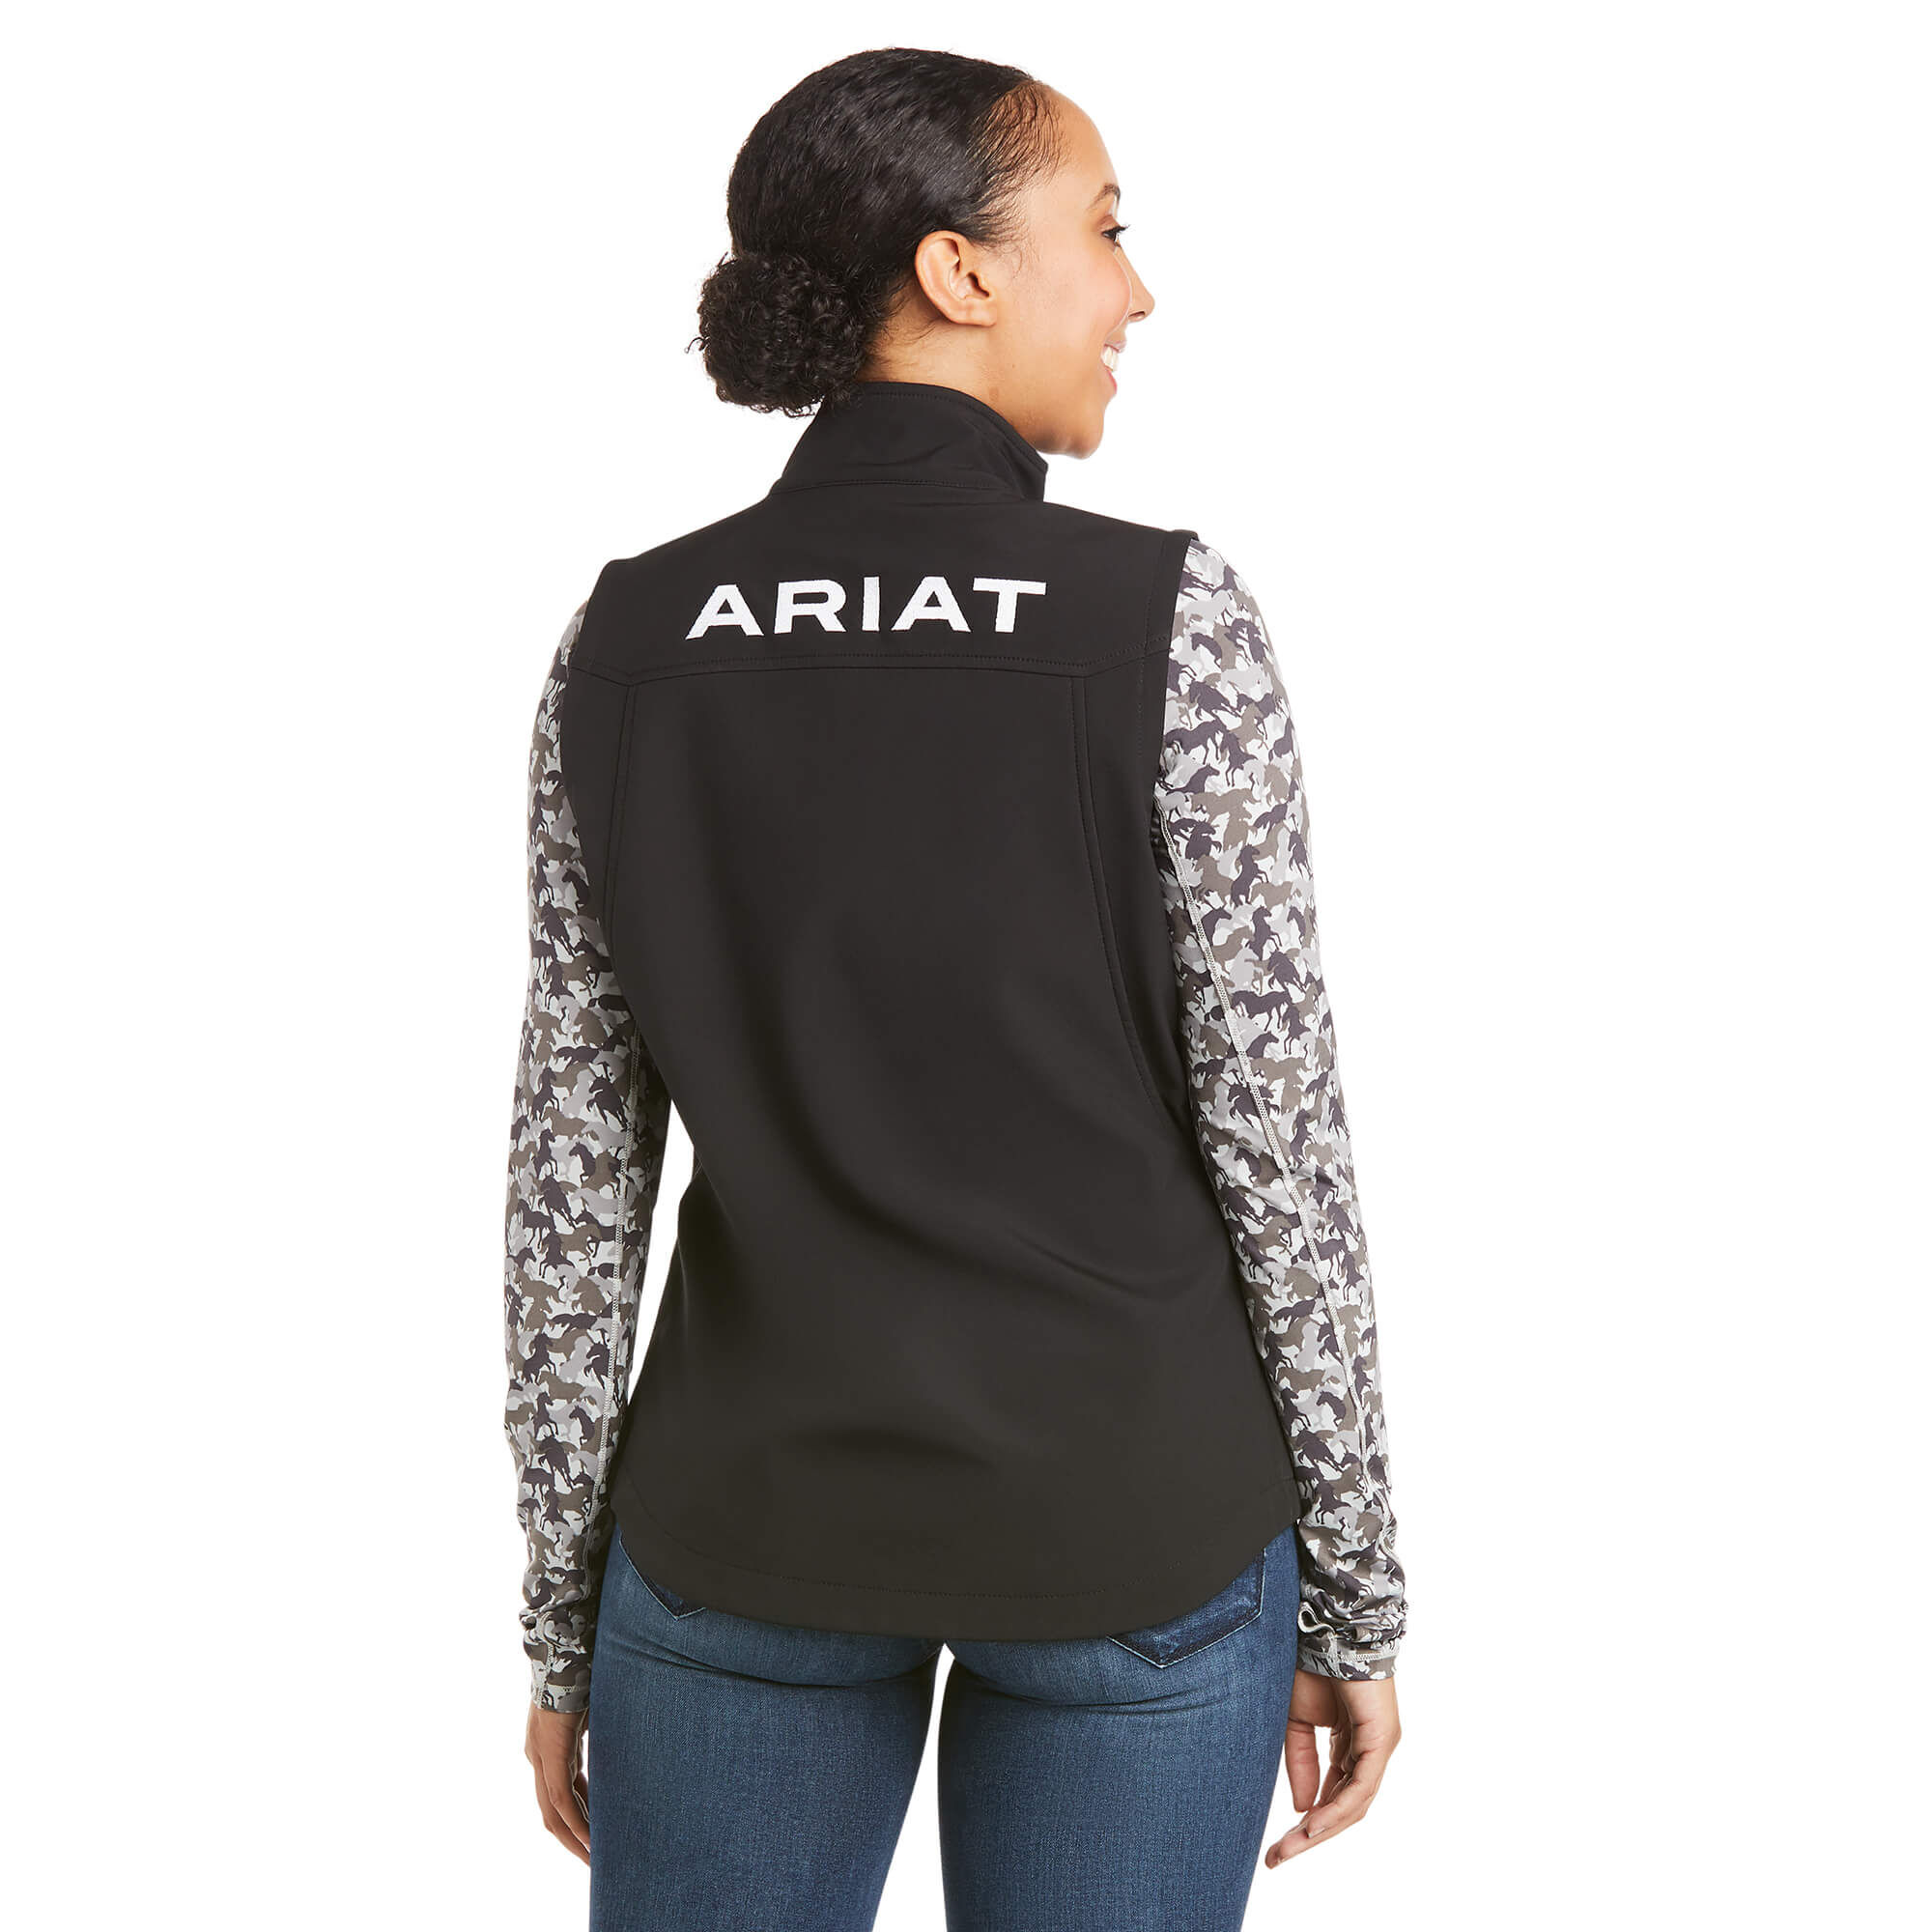 ariat women's vests